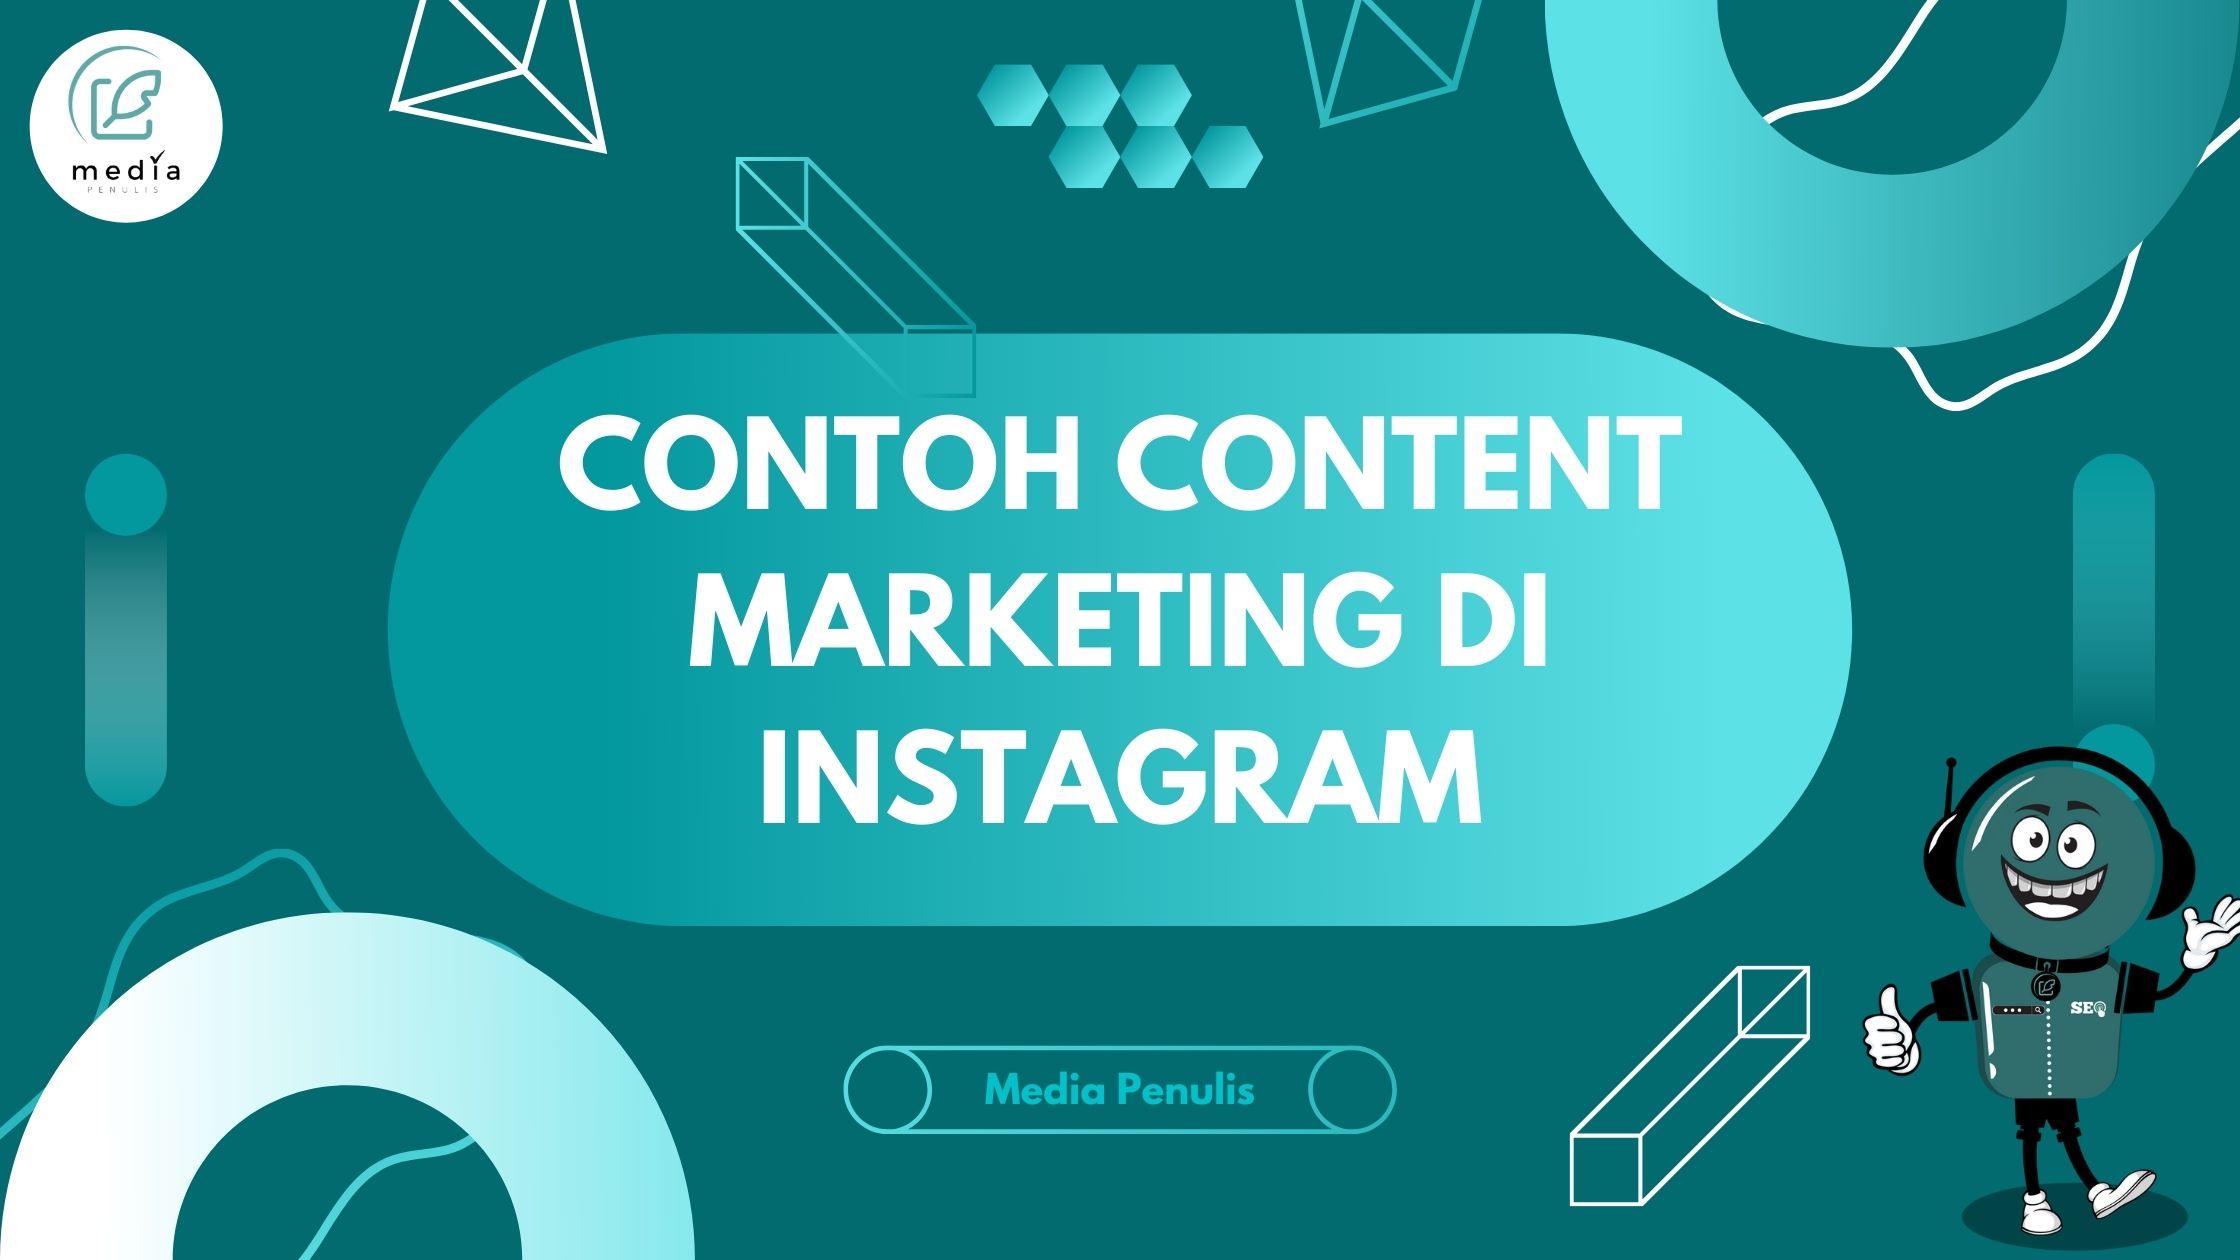 Contoh Content Marketing di Instagram